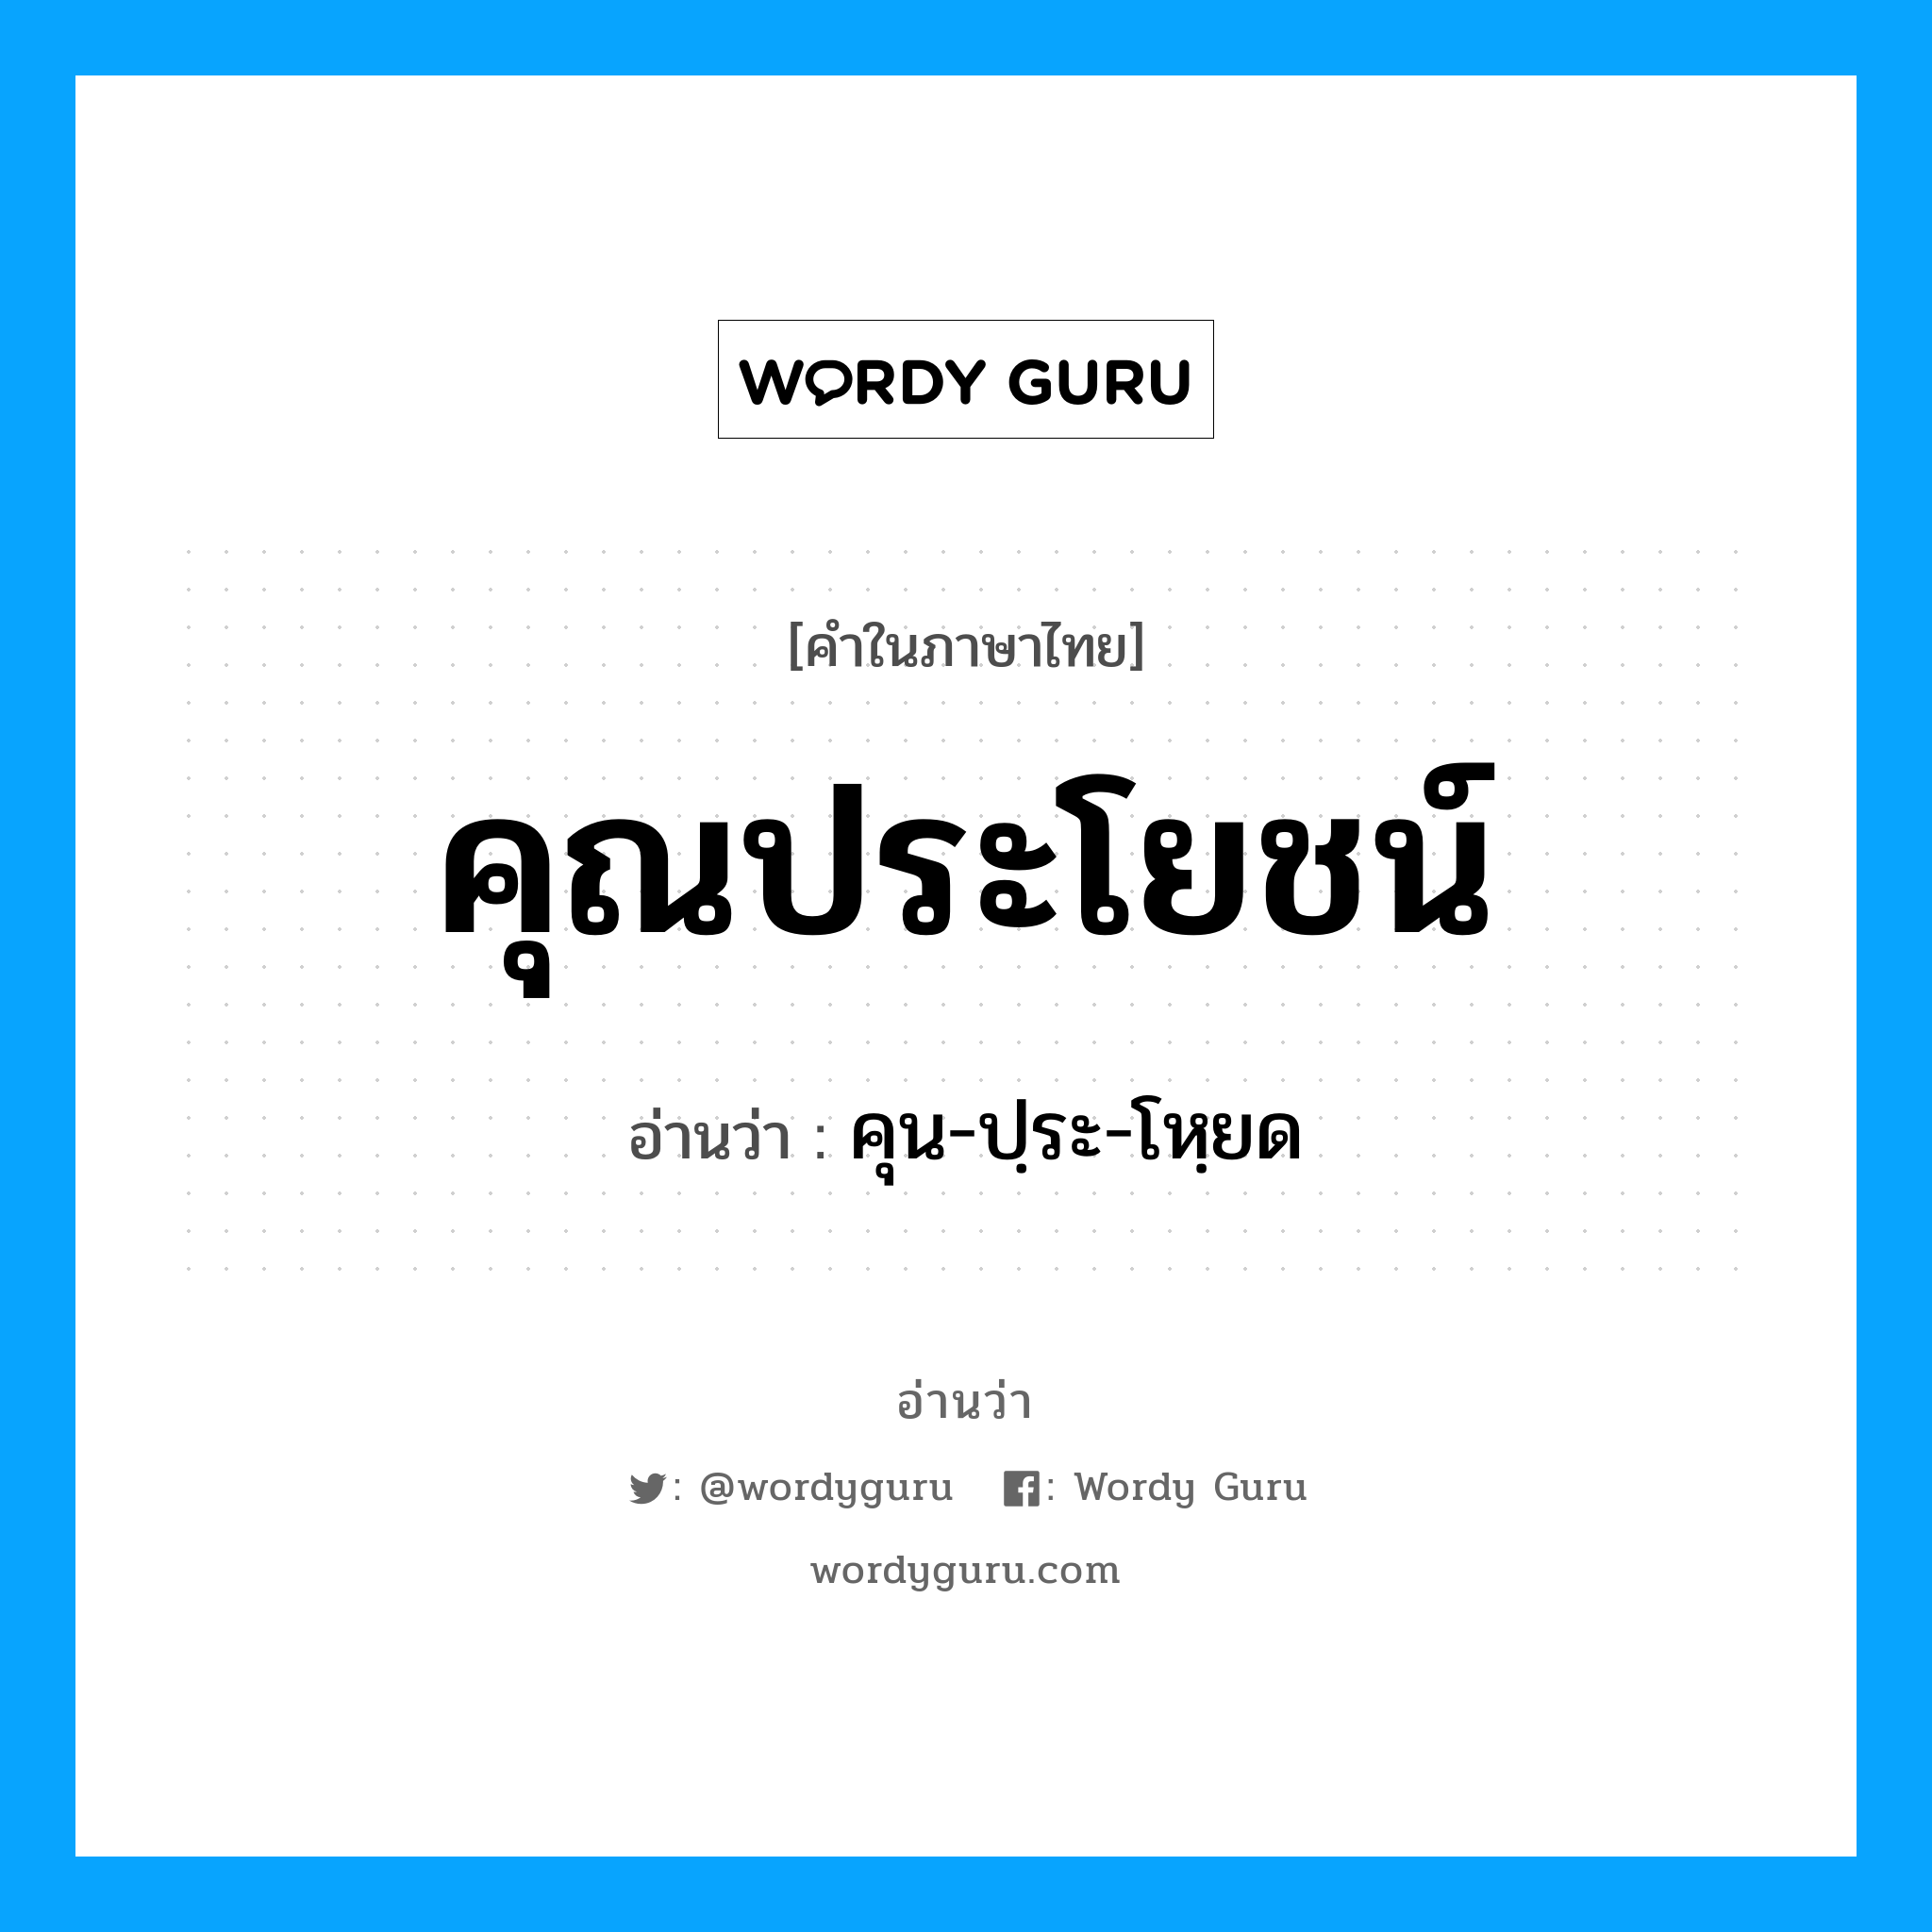 คุน-ปฺระ-โหฺยด เป็นคำอ่านของคำไหน?, คำในภาษาไทย คุน-ปฺระ-โหฺยด อ่านว่า คุณประโยชน์